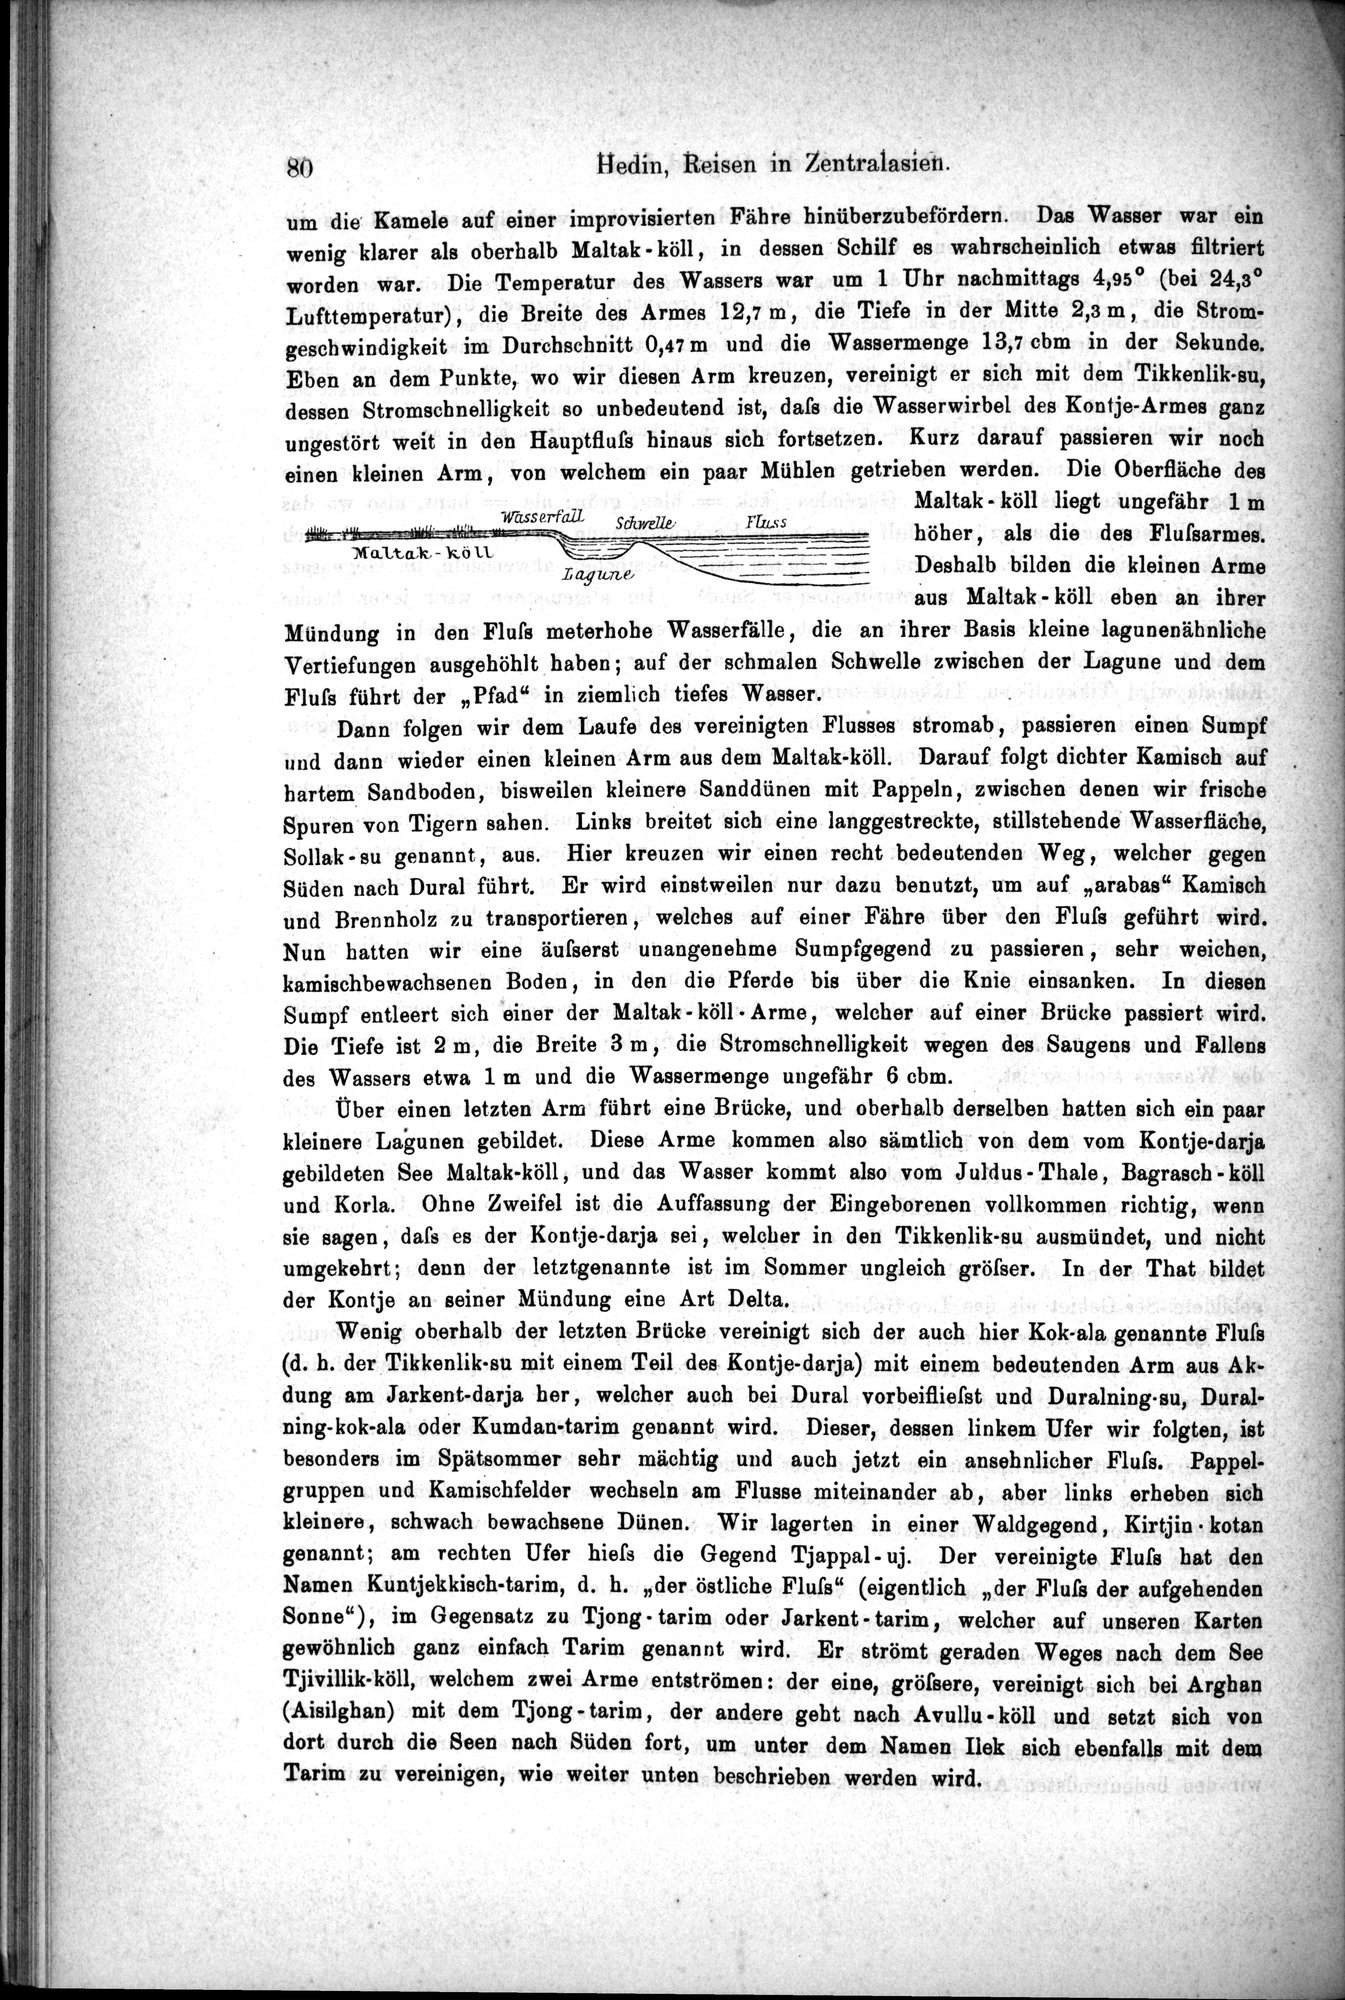 Die Geographische-Wissenschaftlichen Ergebnisse meiner Reisen in Zentralasien, 1894-1897 : vol.1 / Page 92 (Grayscale High Resolution Image)